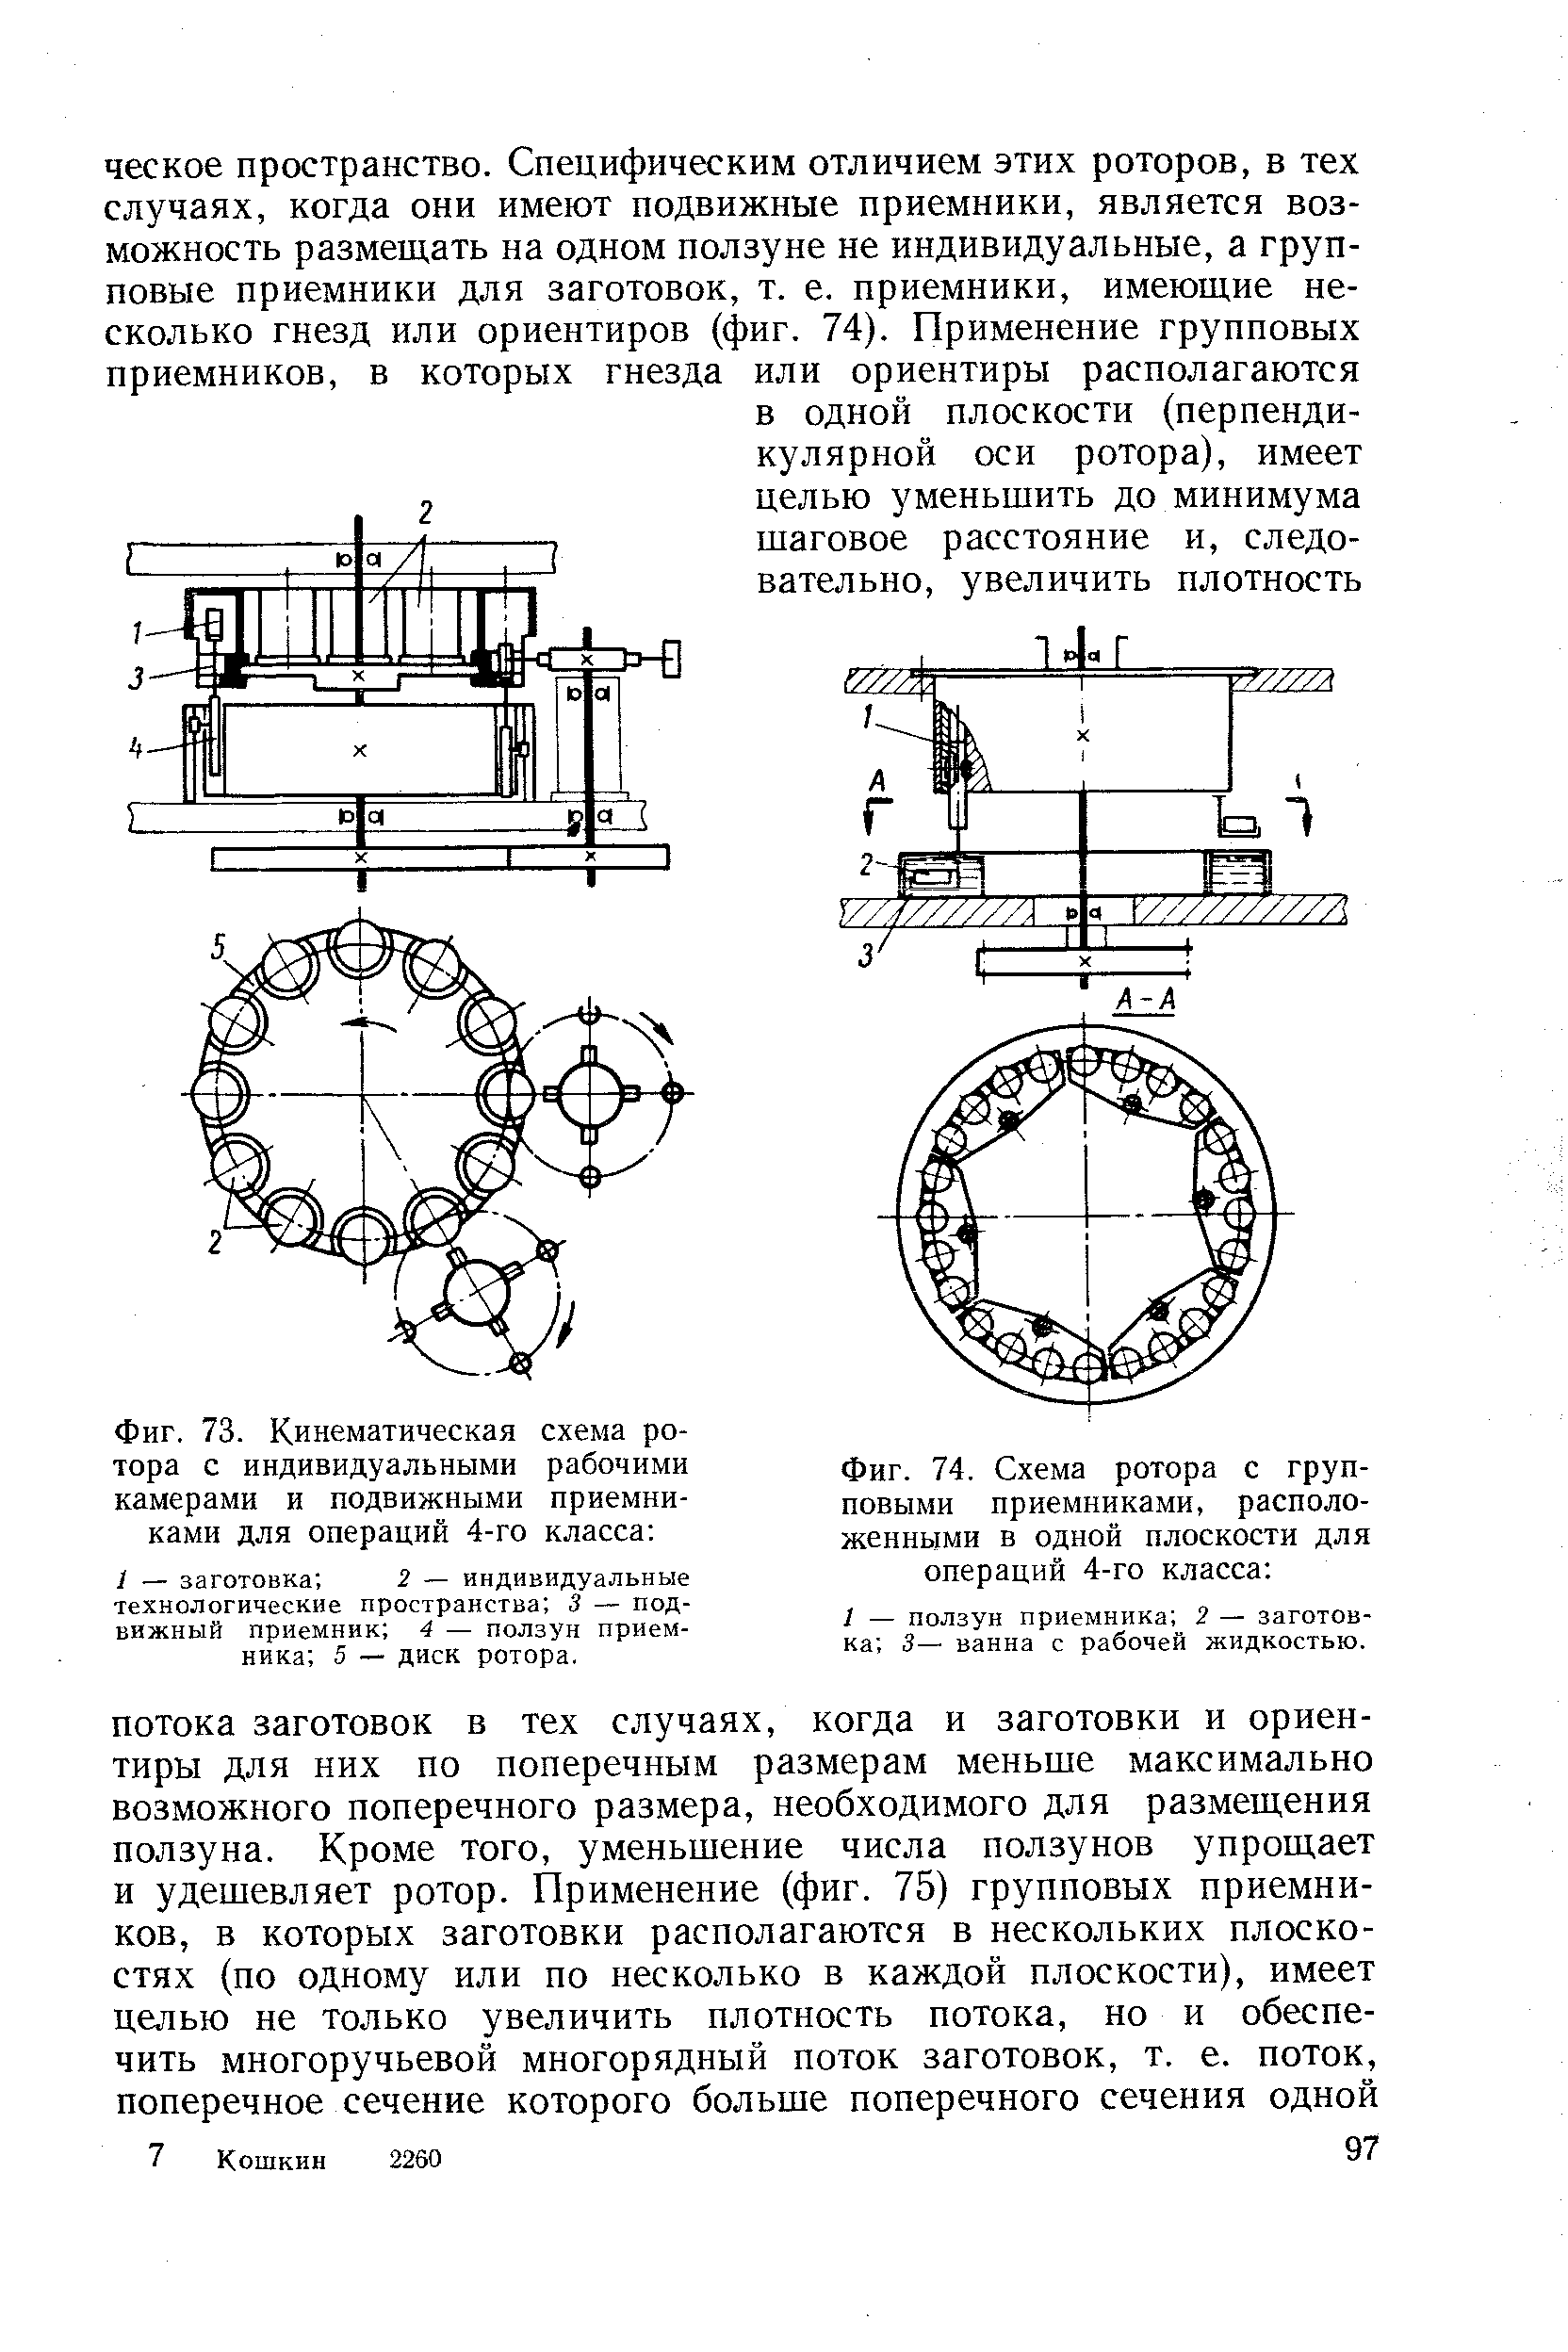 Фиг. 74. Схема ротора с групповыми приемниками, расположенными в одной плоскости для операций 4-го класса 
